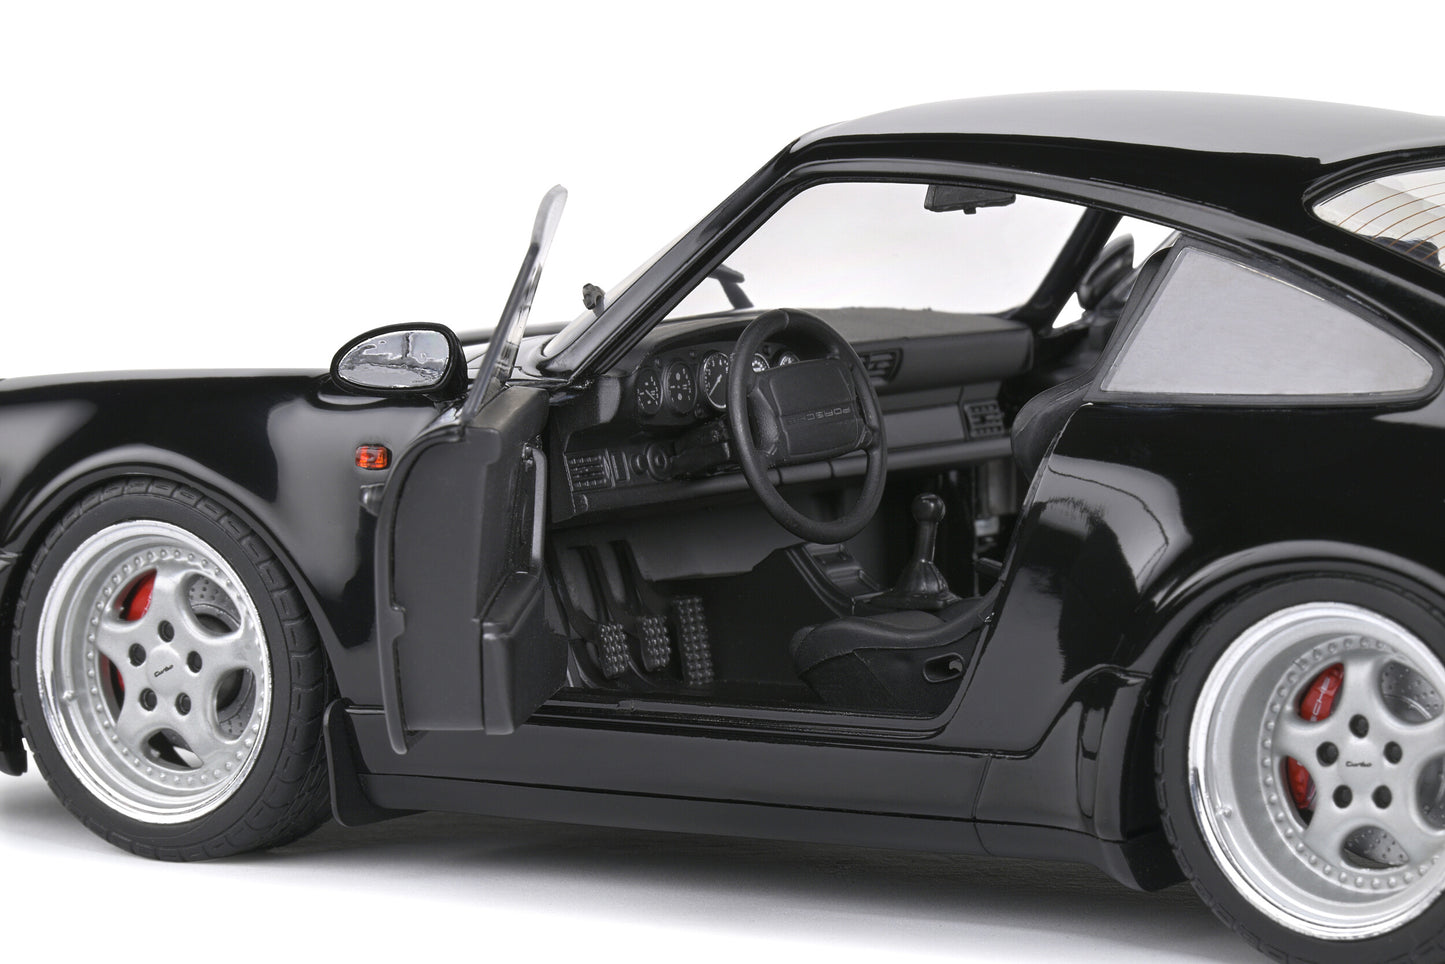 Solido - Porsche 911 (964) Turbo 3.6 (Black) 1:18 Scale Model Car